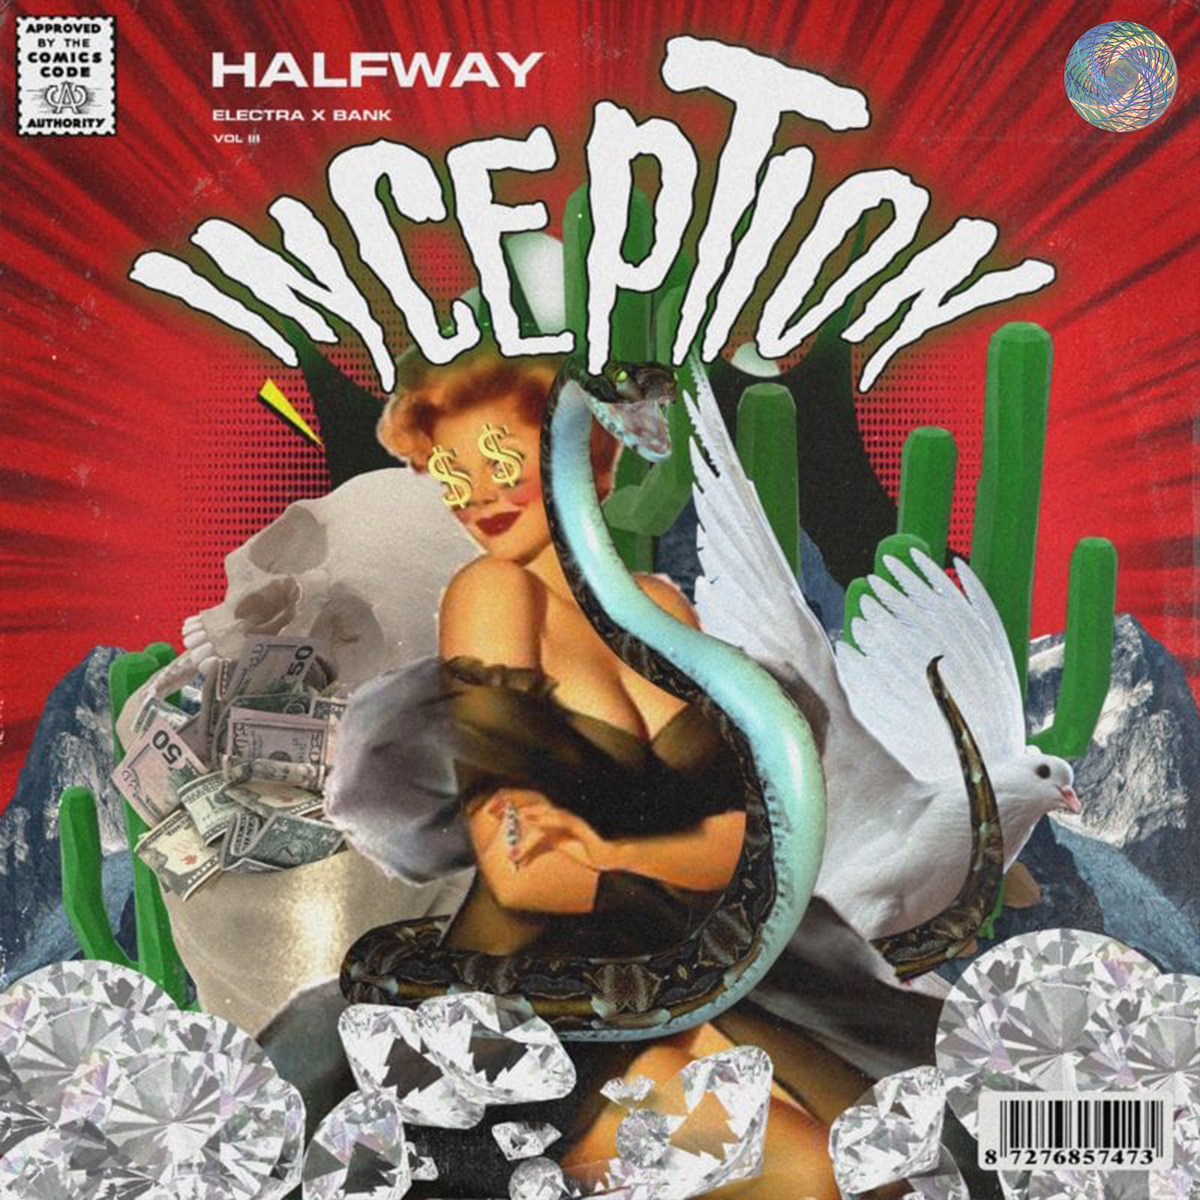 Halfway - Inception Vol. 3 (ElectraX Bank)